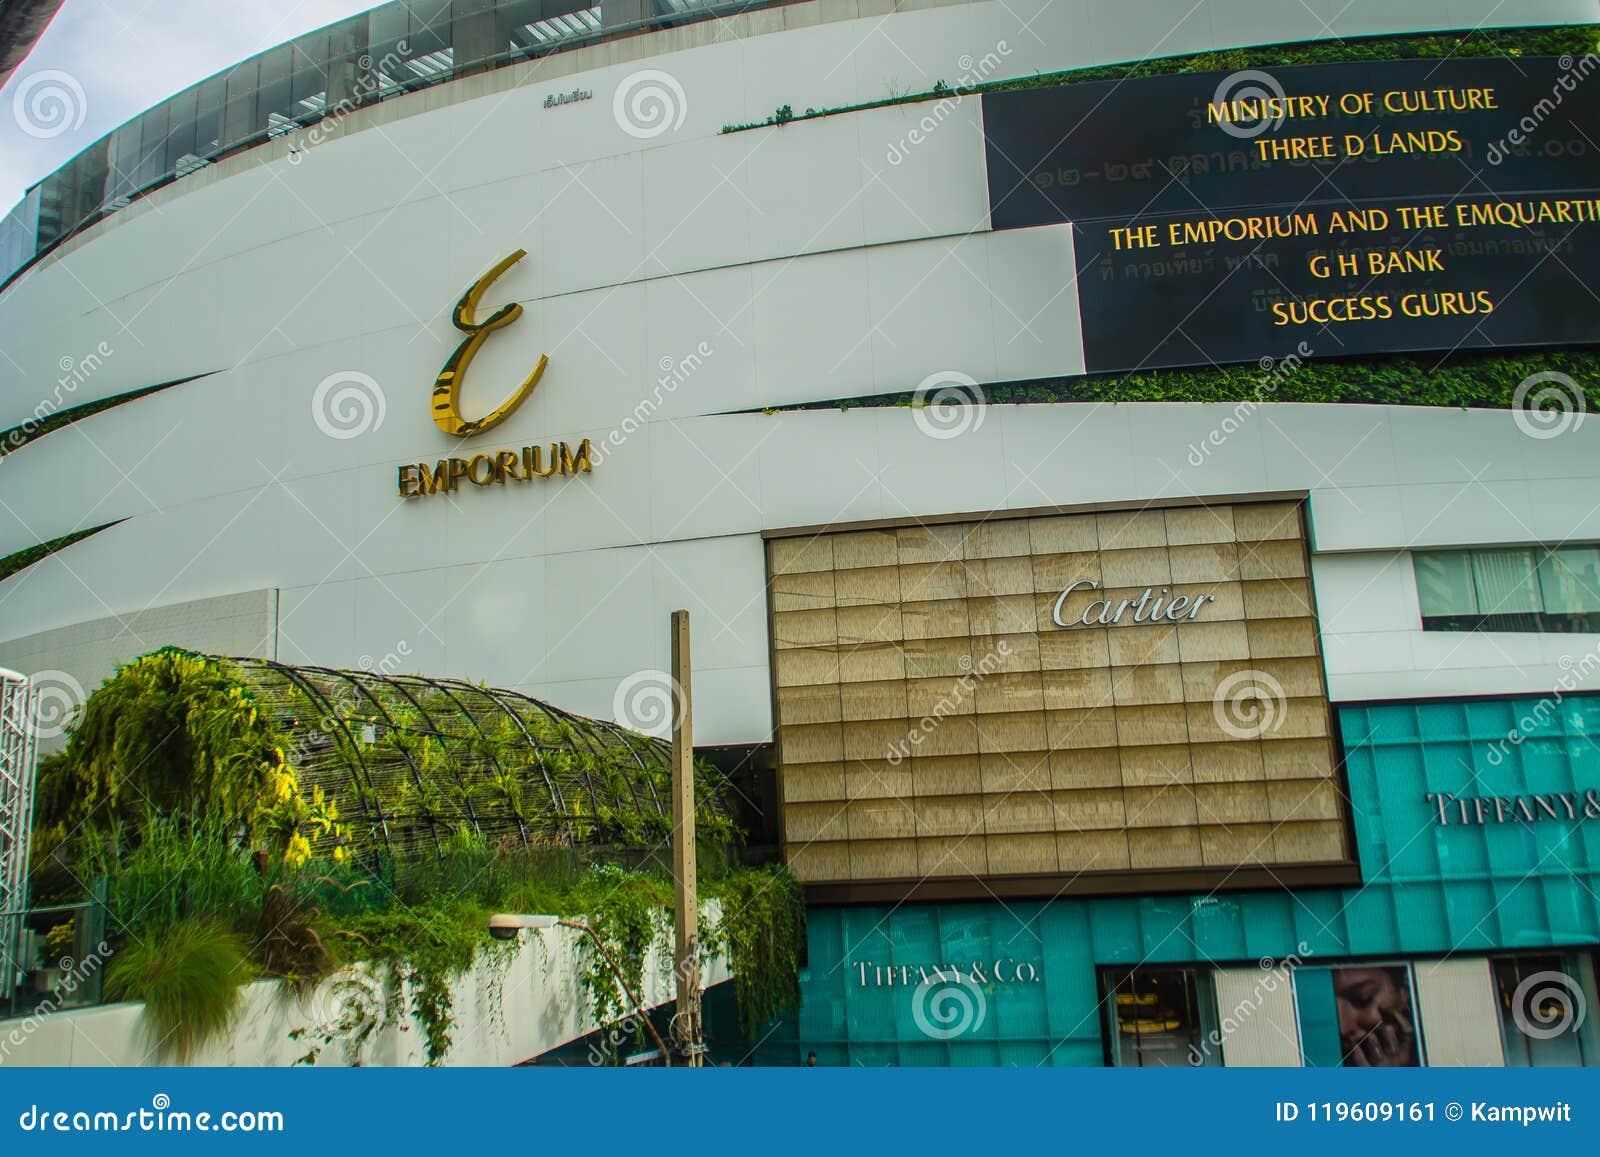 Louis Vuitton Shop, Emporium Shopping Mall, Bangkok, Thailand